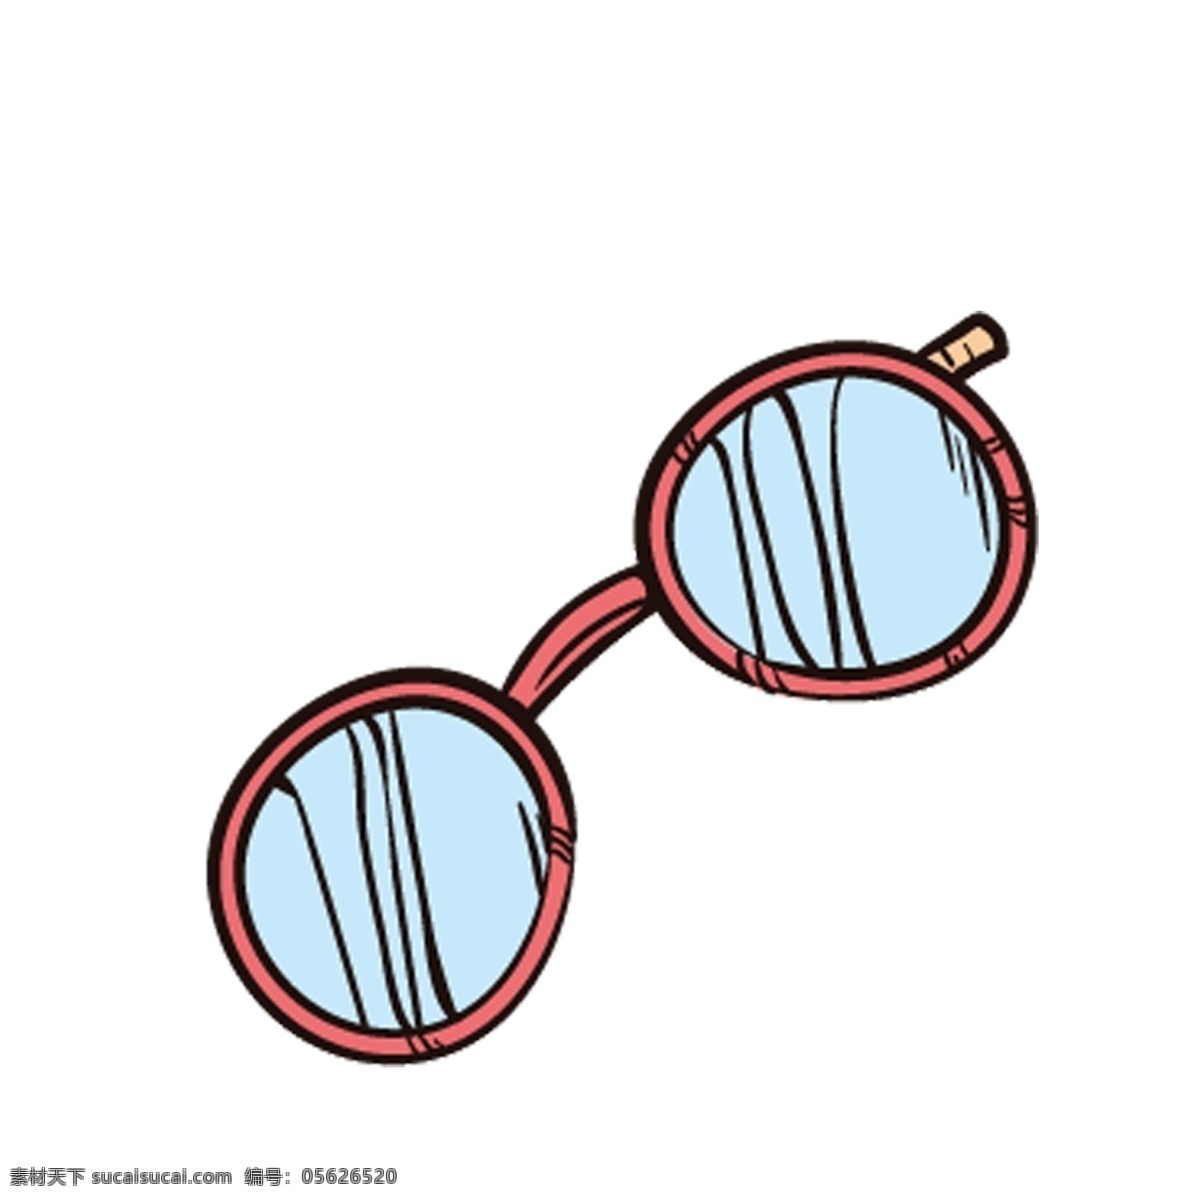 卡通 黄色 眼镜 免 抠 图 时尚眼镜 墨镜 漂亮的眼镜 男士眼镜 卡通图案 卡通插画 免抠图